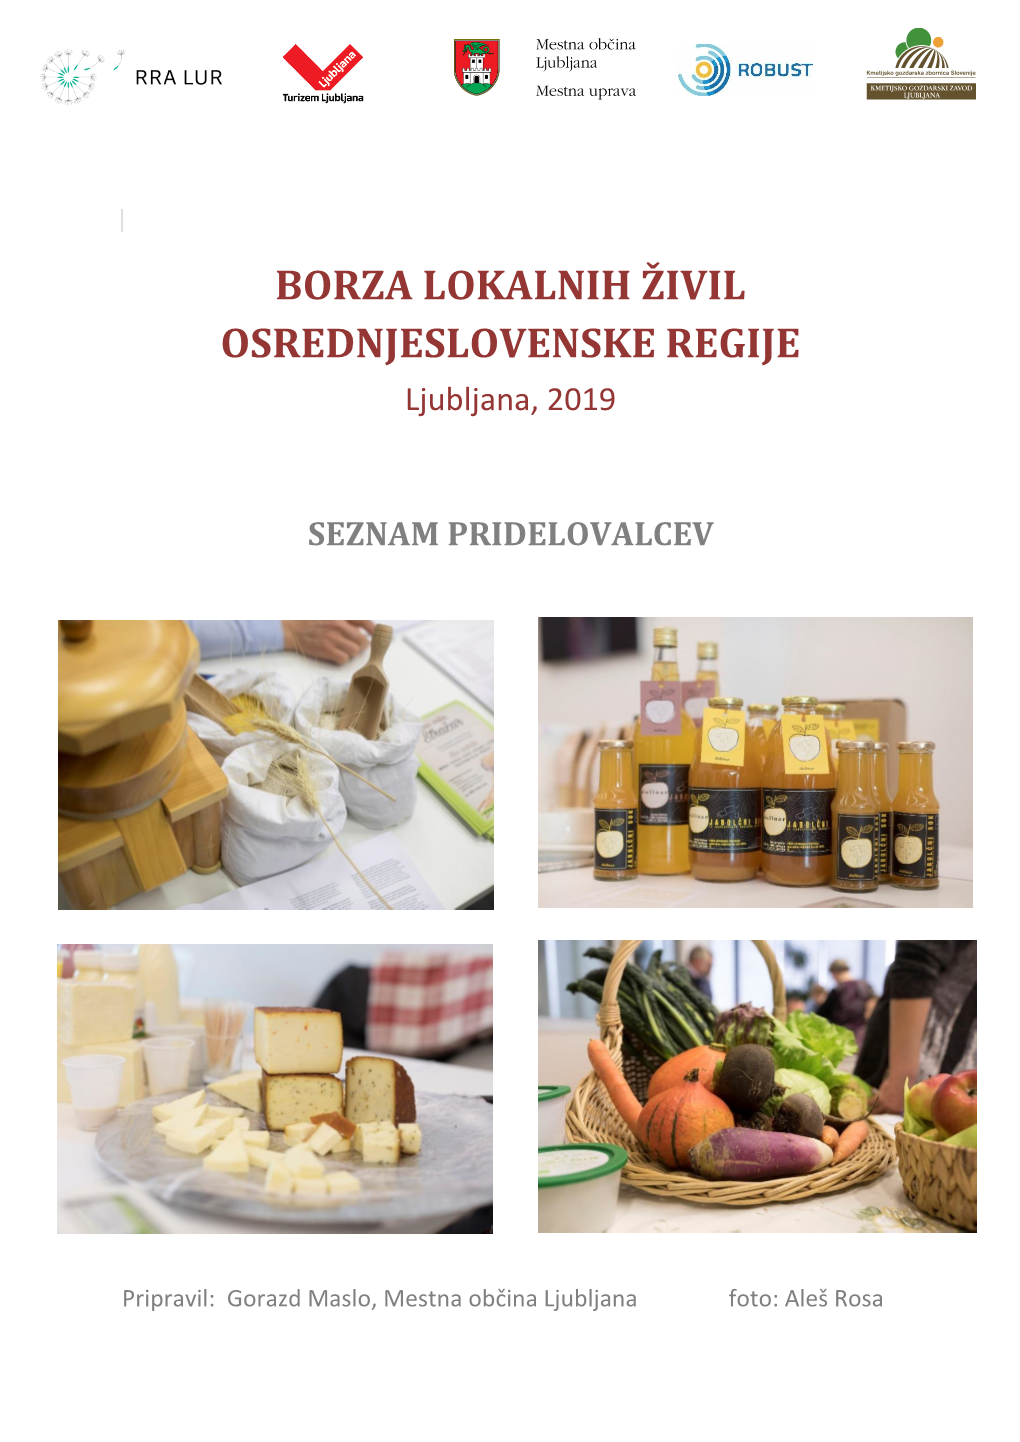 BORZA LOKALNIH ŽIVIL OSREDNJESLOVENSKE REGIJE Ljubljana, 2019